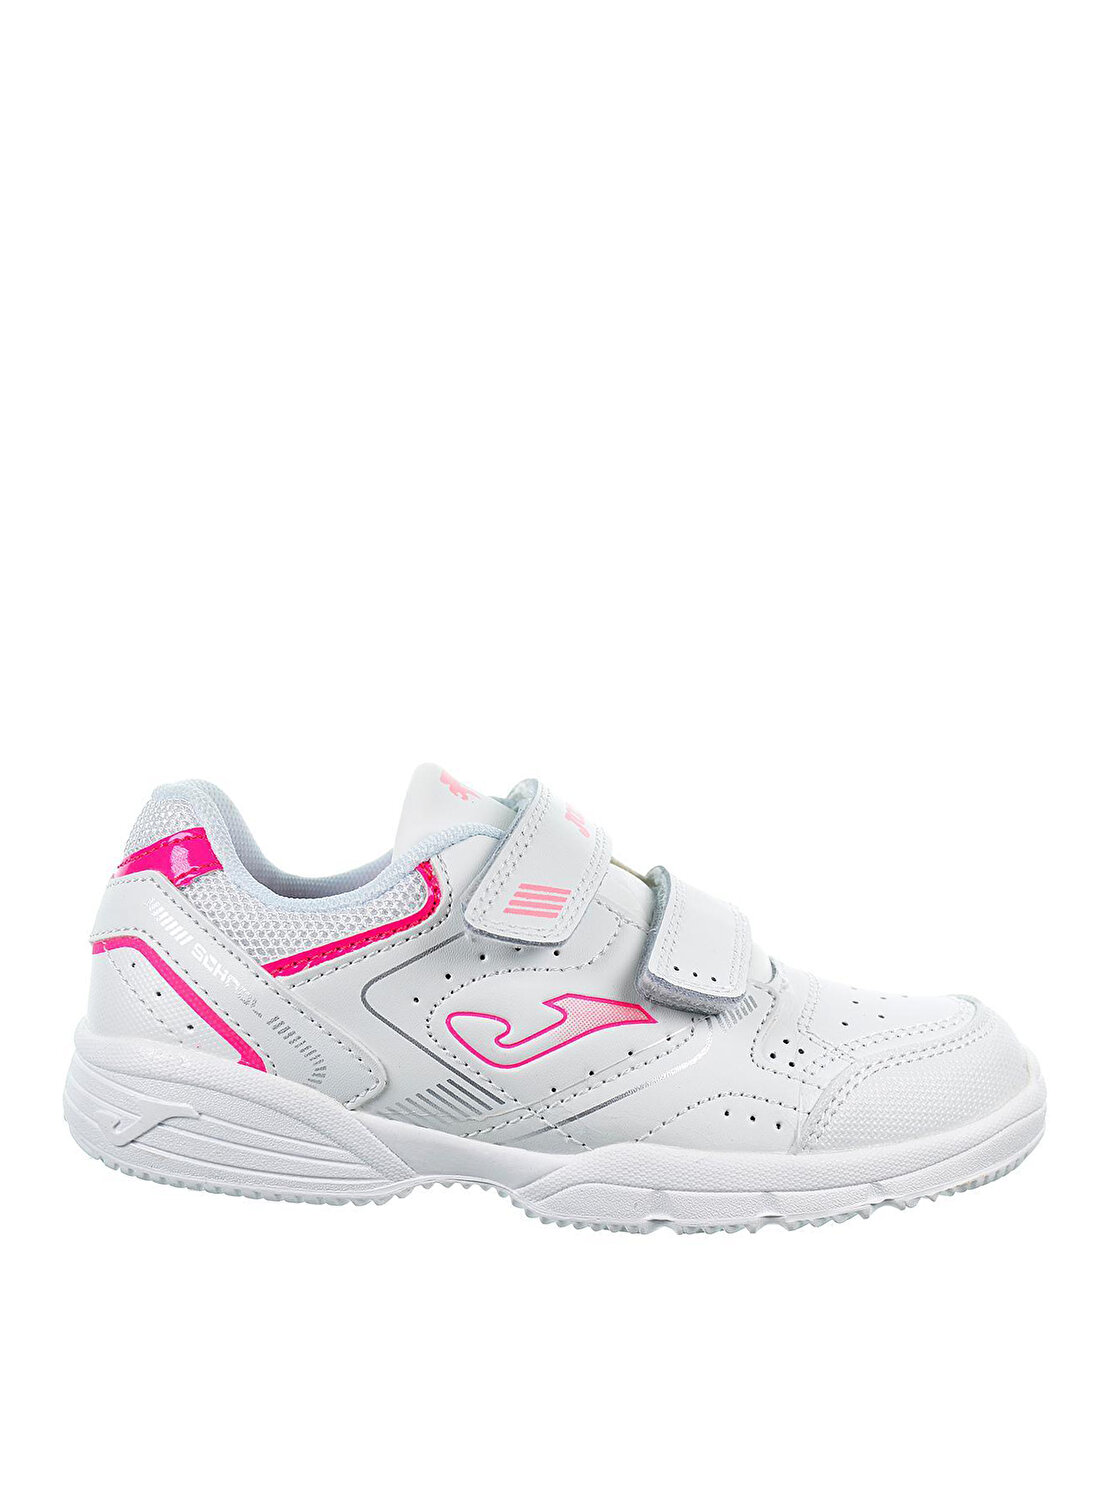 Joma Beyaz - Pembe Kız Çocuk Yürüyüş Ayakkabısı WSCHOW2313V W.SCHOOL JR 2313 WHITE 